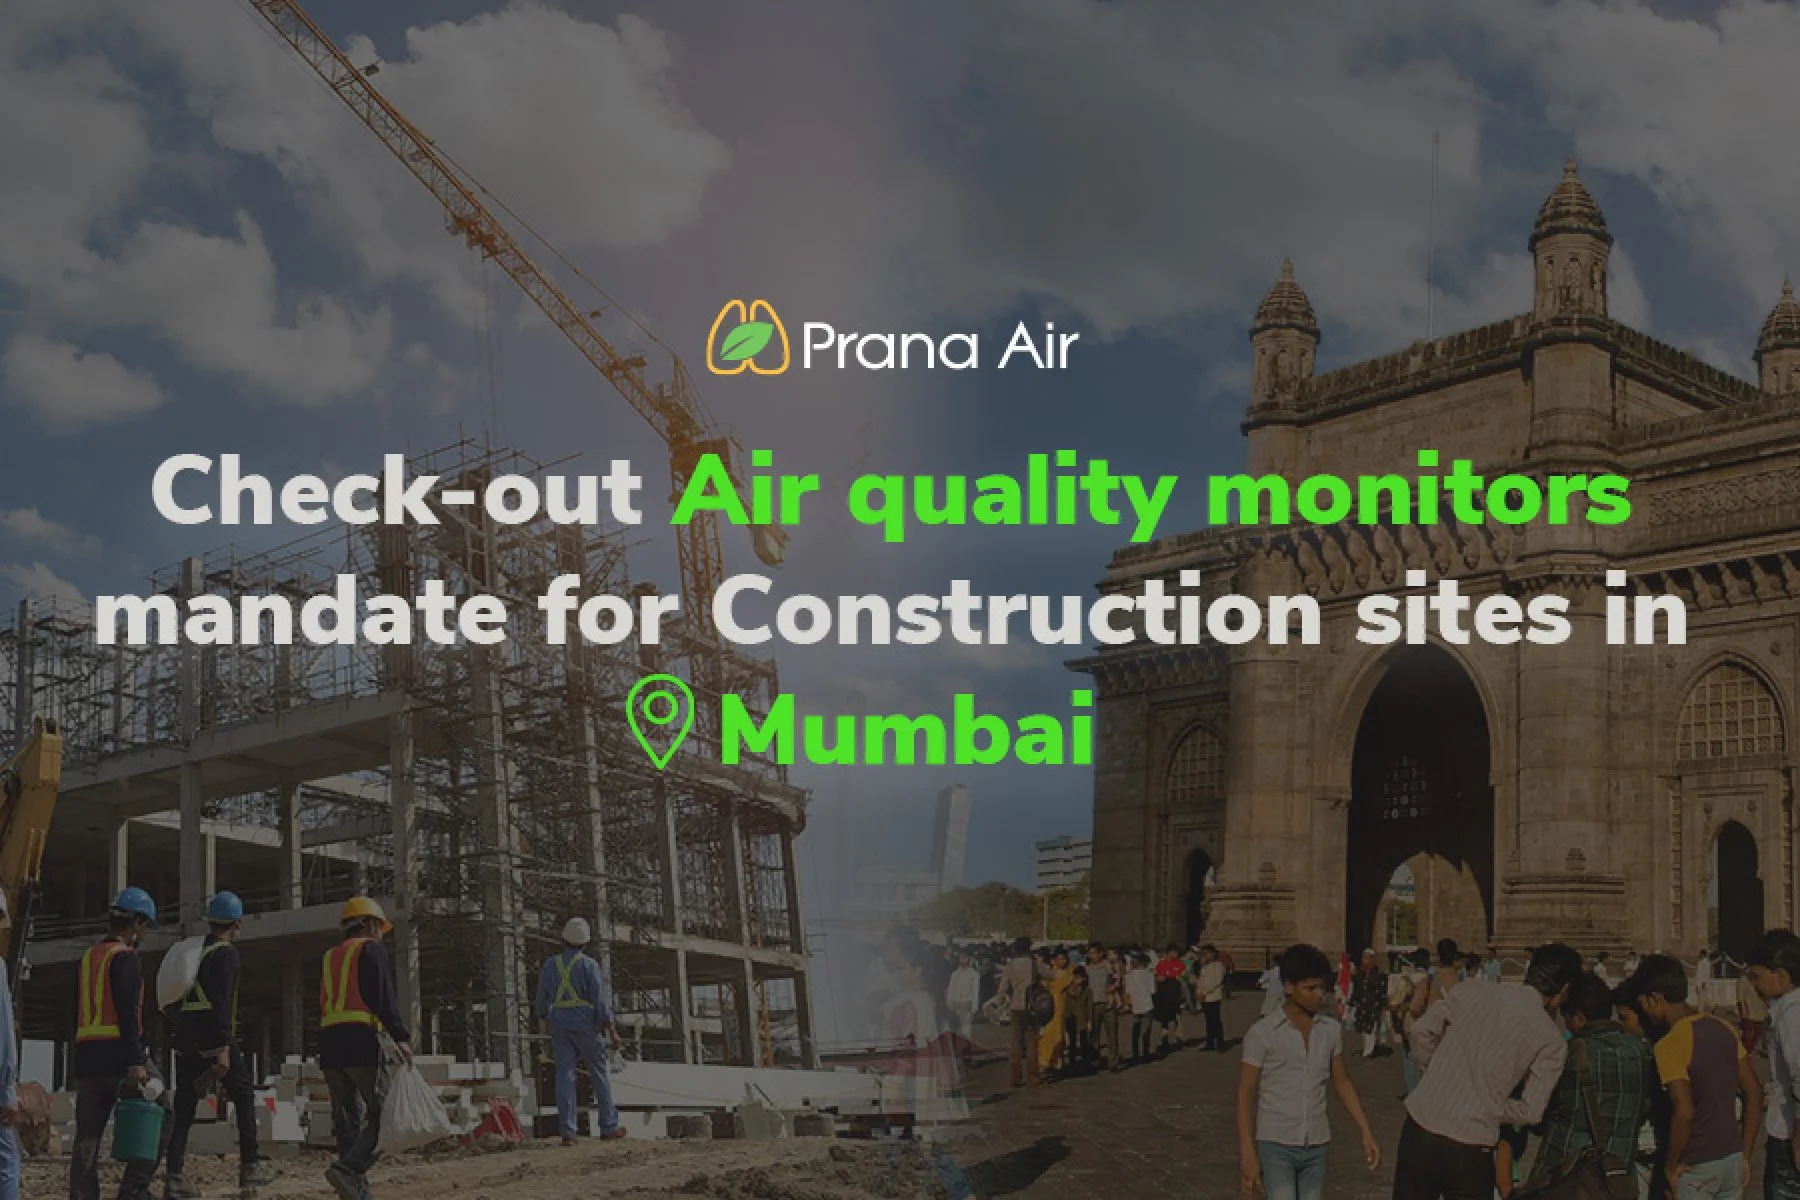 Construction sites in Mumbai